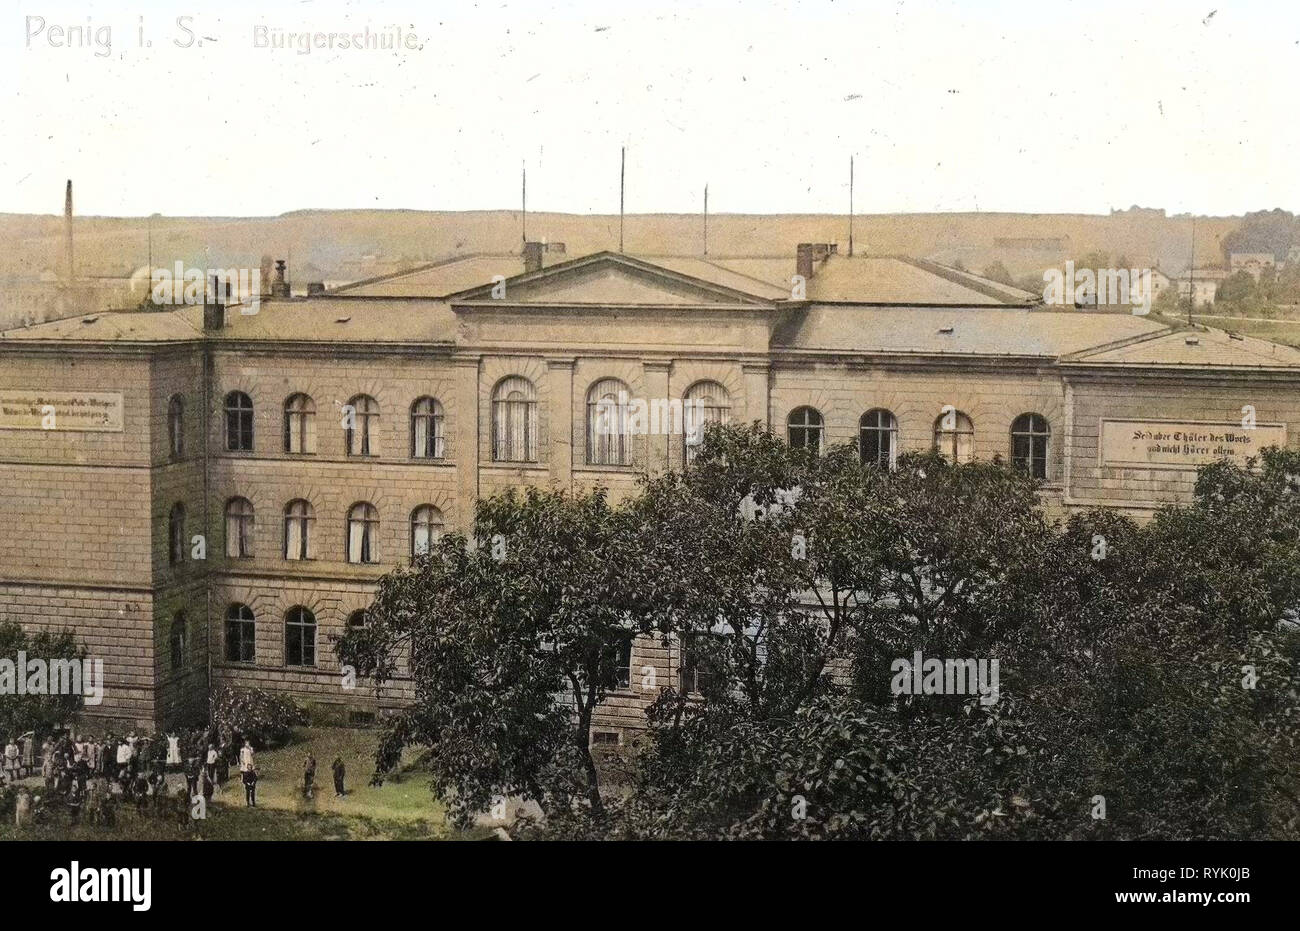 Schulen im Landkreis Mittelsachsen, Gebäude in Penig, 1913, Landkreis Mittelsachsen, Penig, Bürgerschule, Deutschland Stockfoto